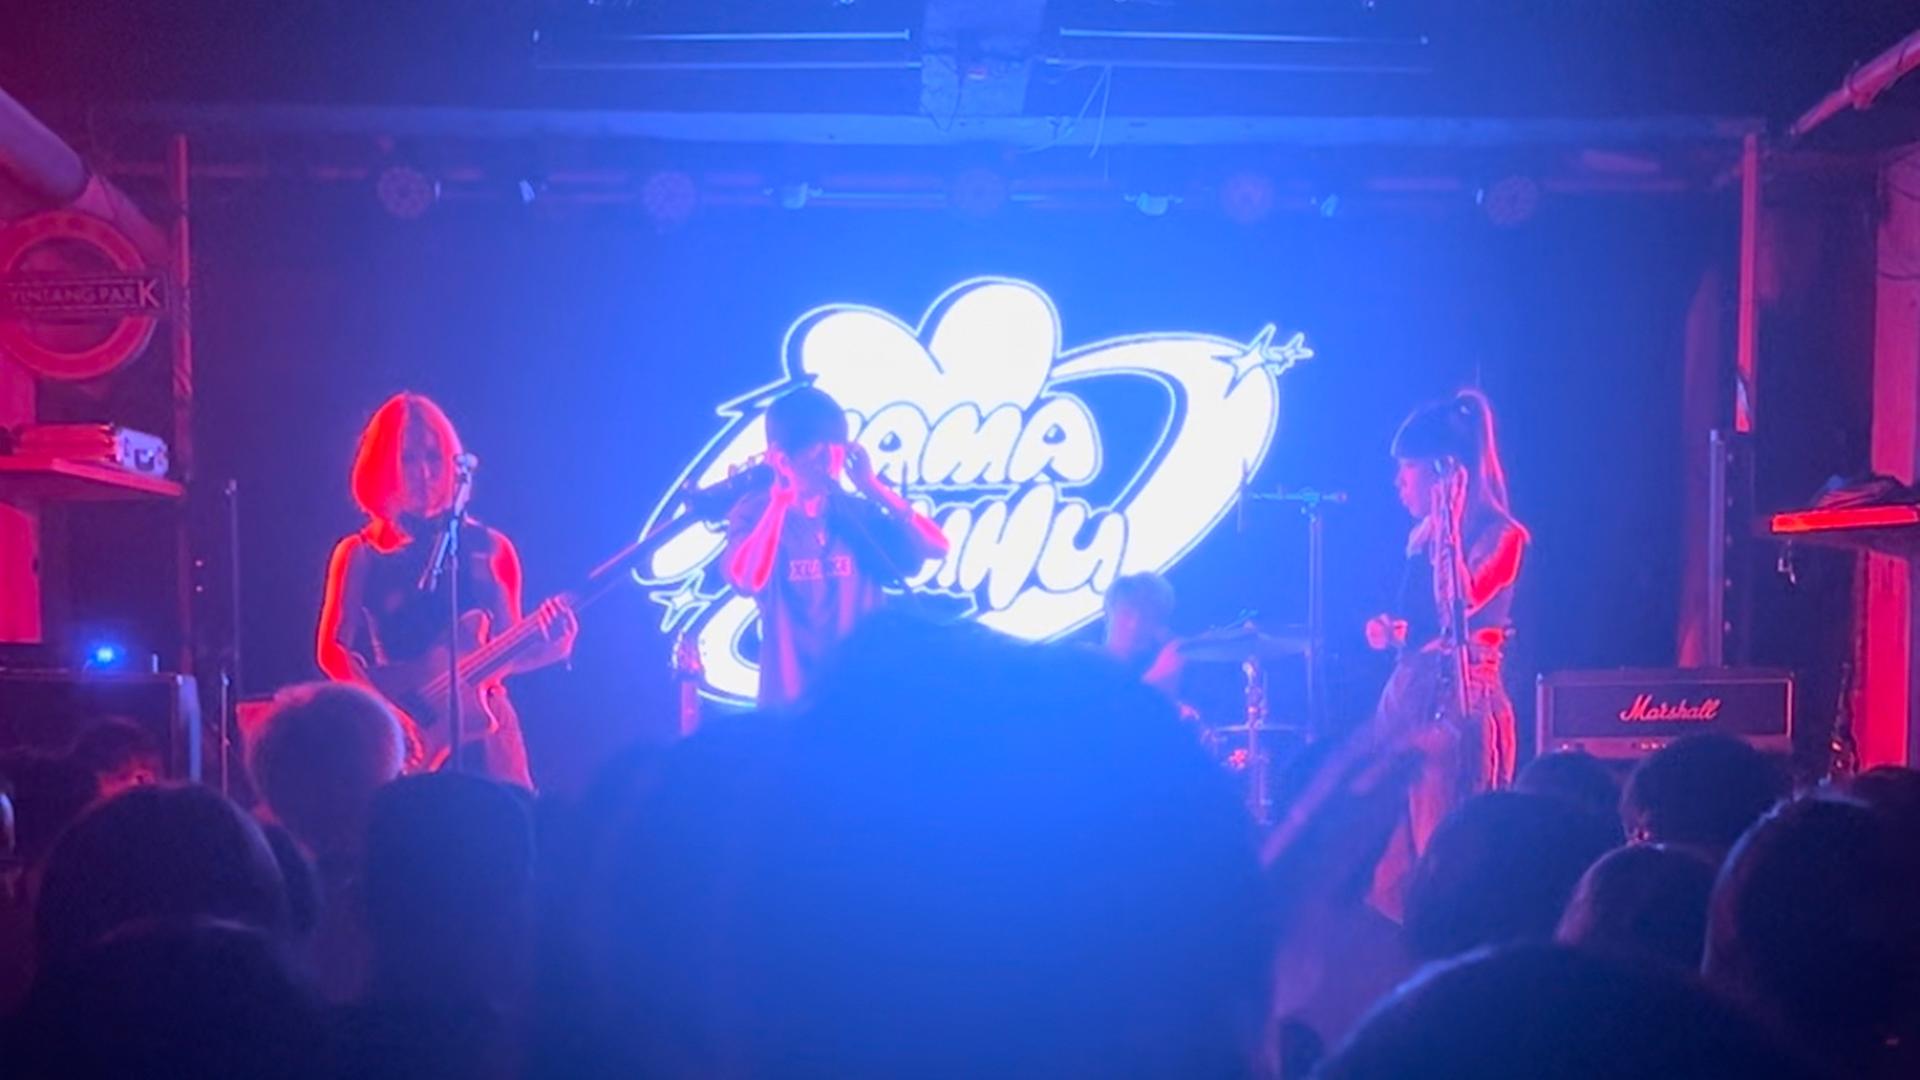 Eine Punkband steht auf einer blau-pink erleuchteten Bühne in einem kleinen Club. Auf dem Bühnenhintergrund steht in weißer geschwungener Schrift "Mamahuhu"